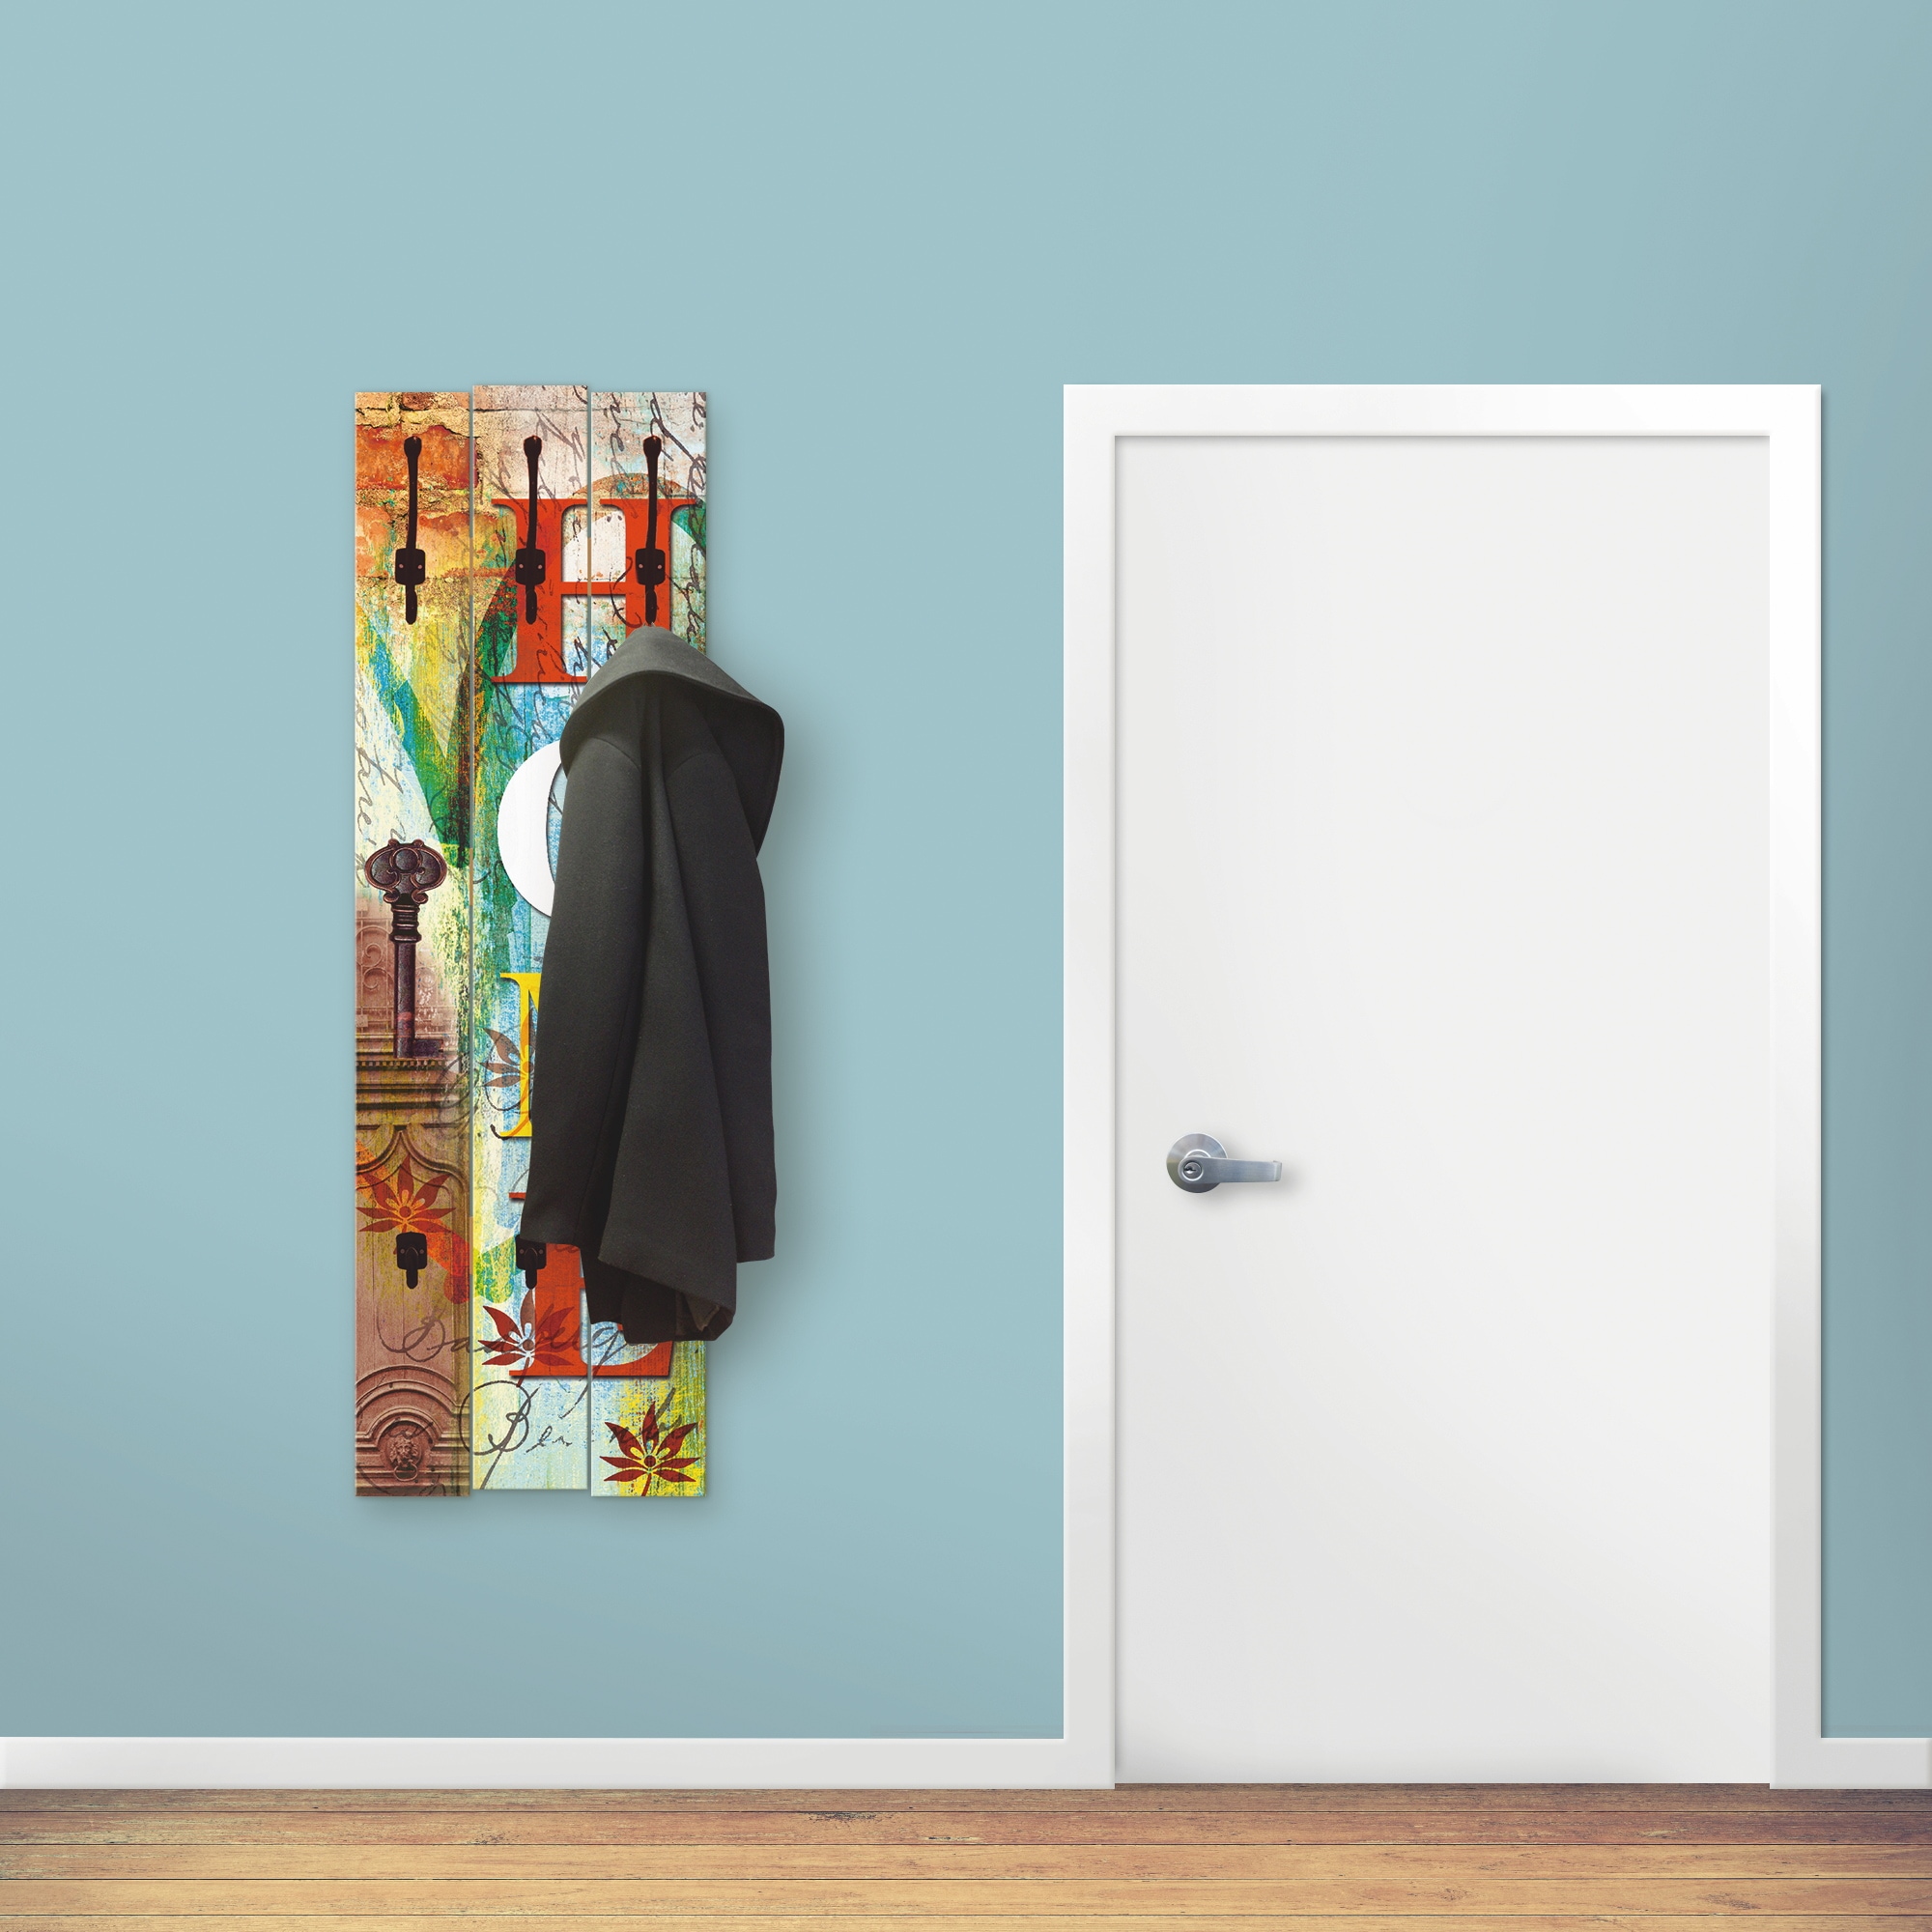 Artland Qualitätsmöbel I Garderobe Wandpaneele mit Motiv 45 x 140 cm Statement Bilder Sprüche Texte Digitale Kunst Bunt G4AZ Buntes Zuhause